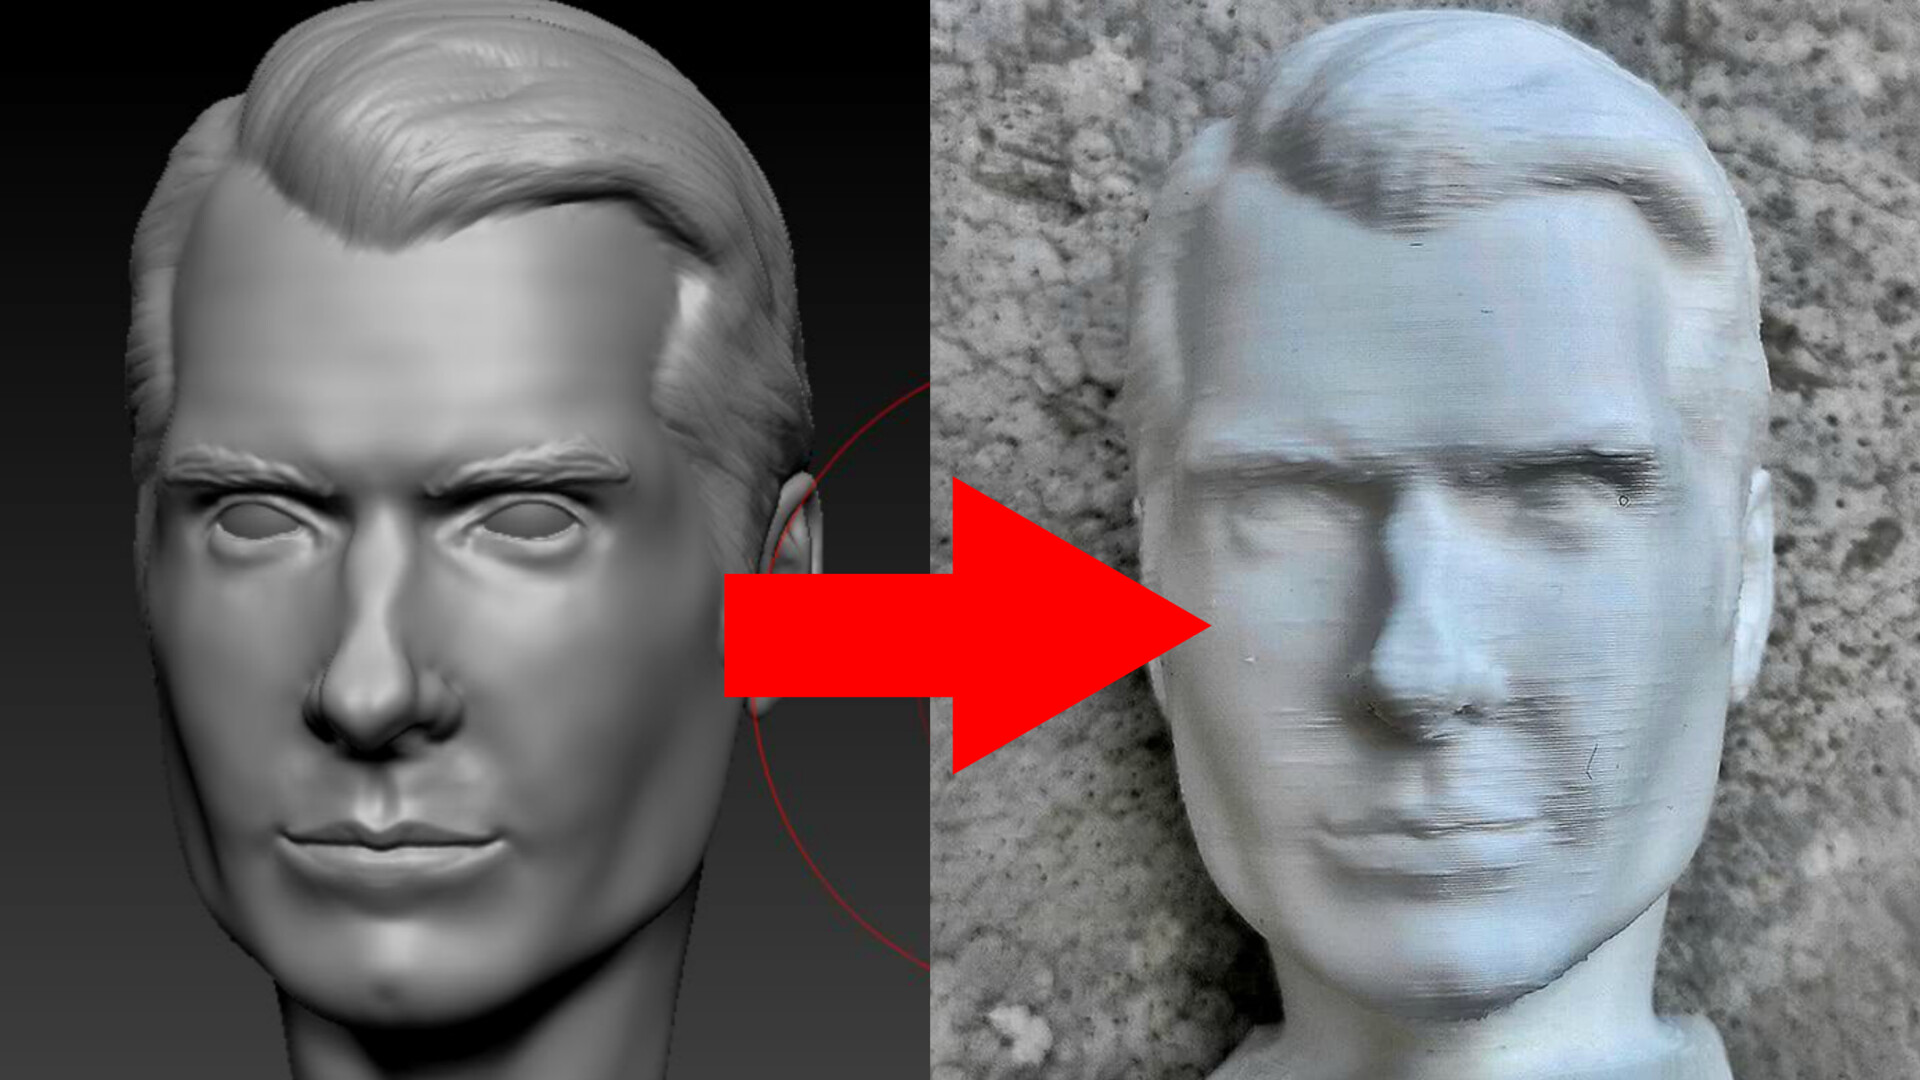 ArtStation - After 1 month is 3D sculpting - Henry Cavil. I 3D printed ...